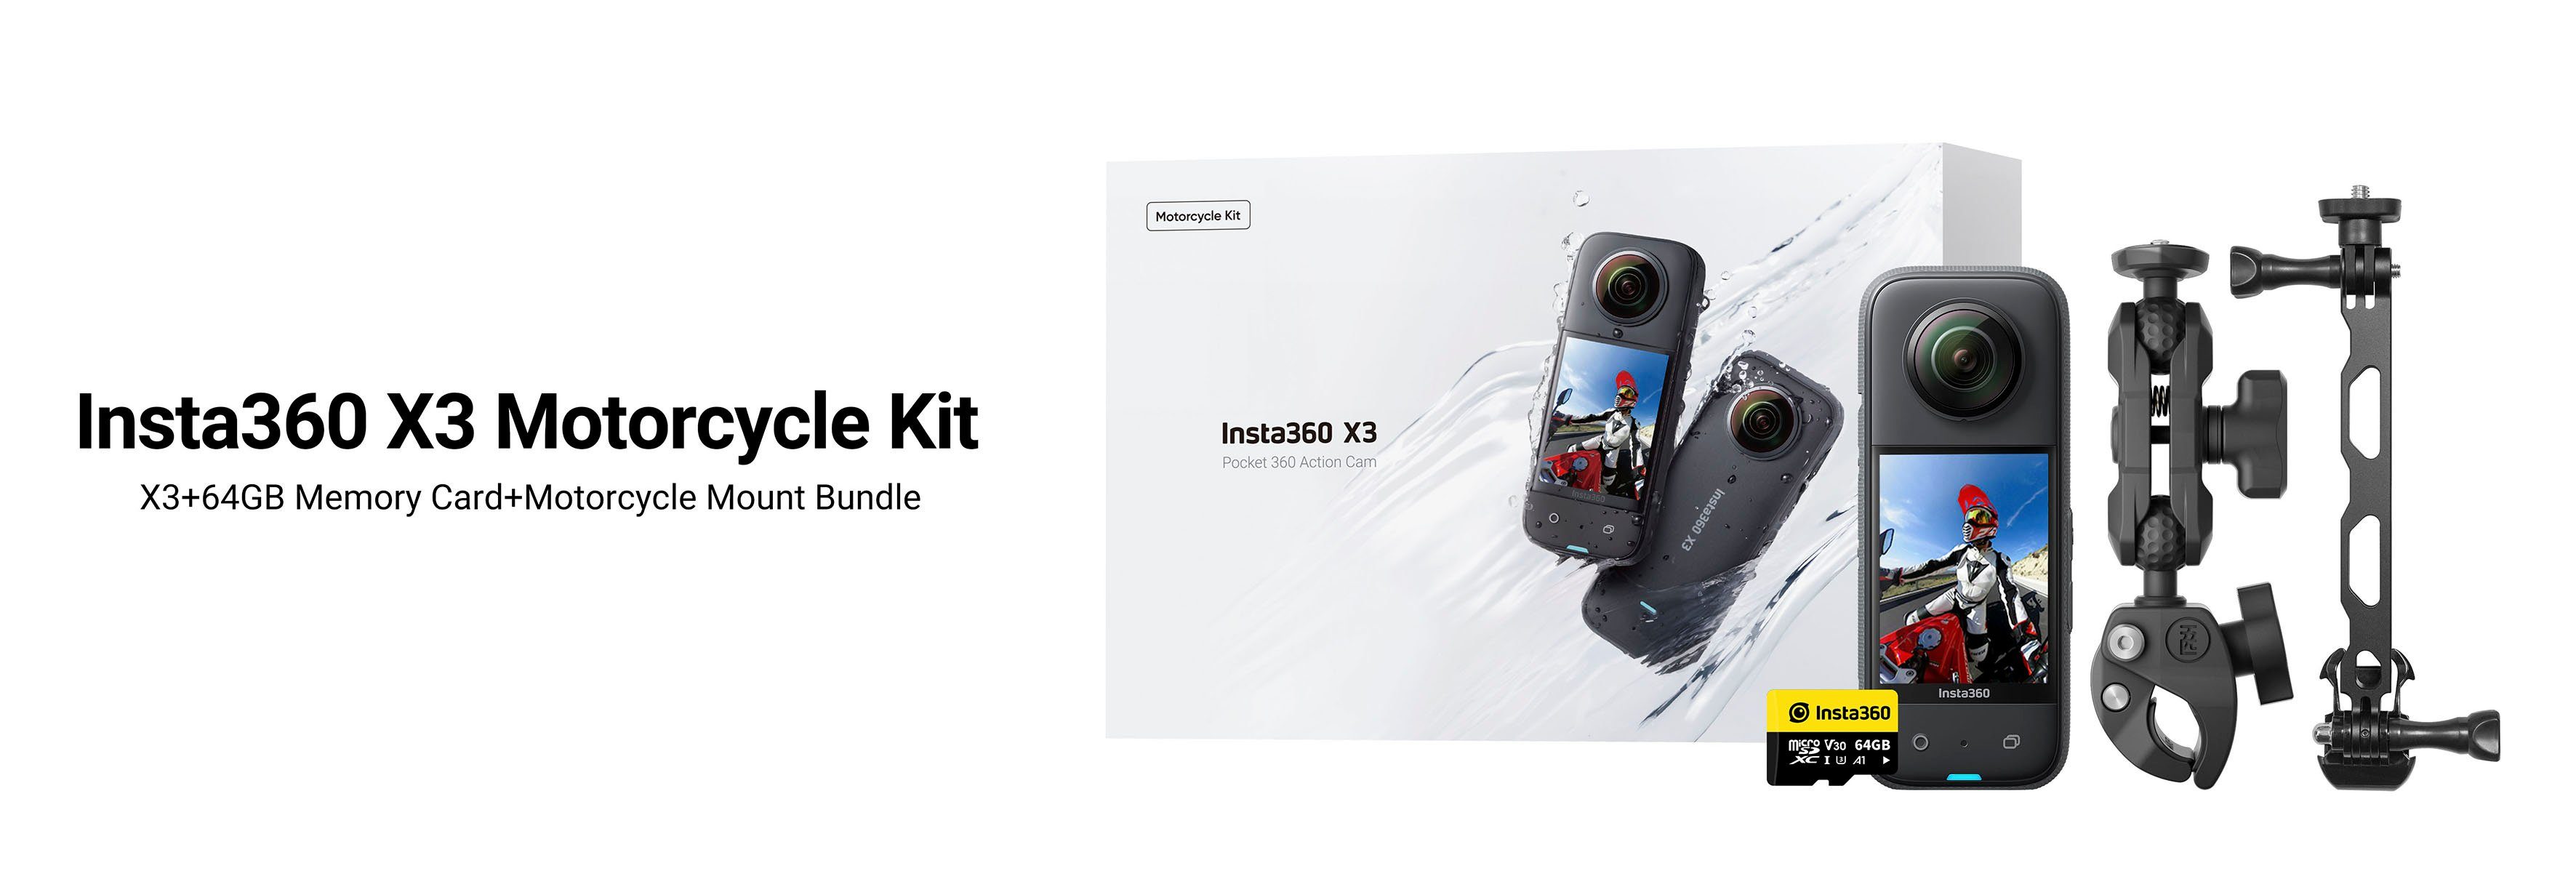 (Wi-Fi) (5,7K, Camcorder Motorcycle Insta360 X3 Bluetooth, Kit WLAN